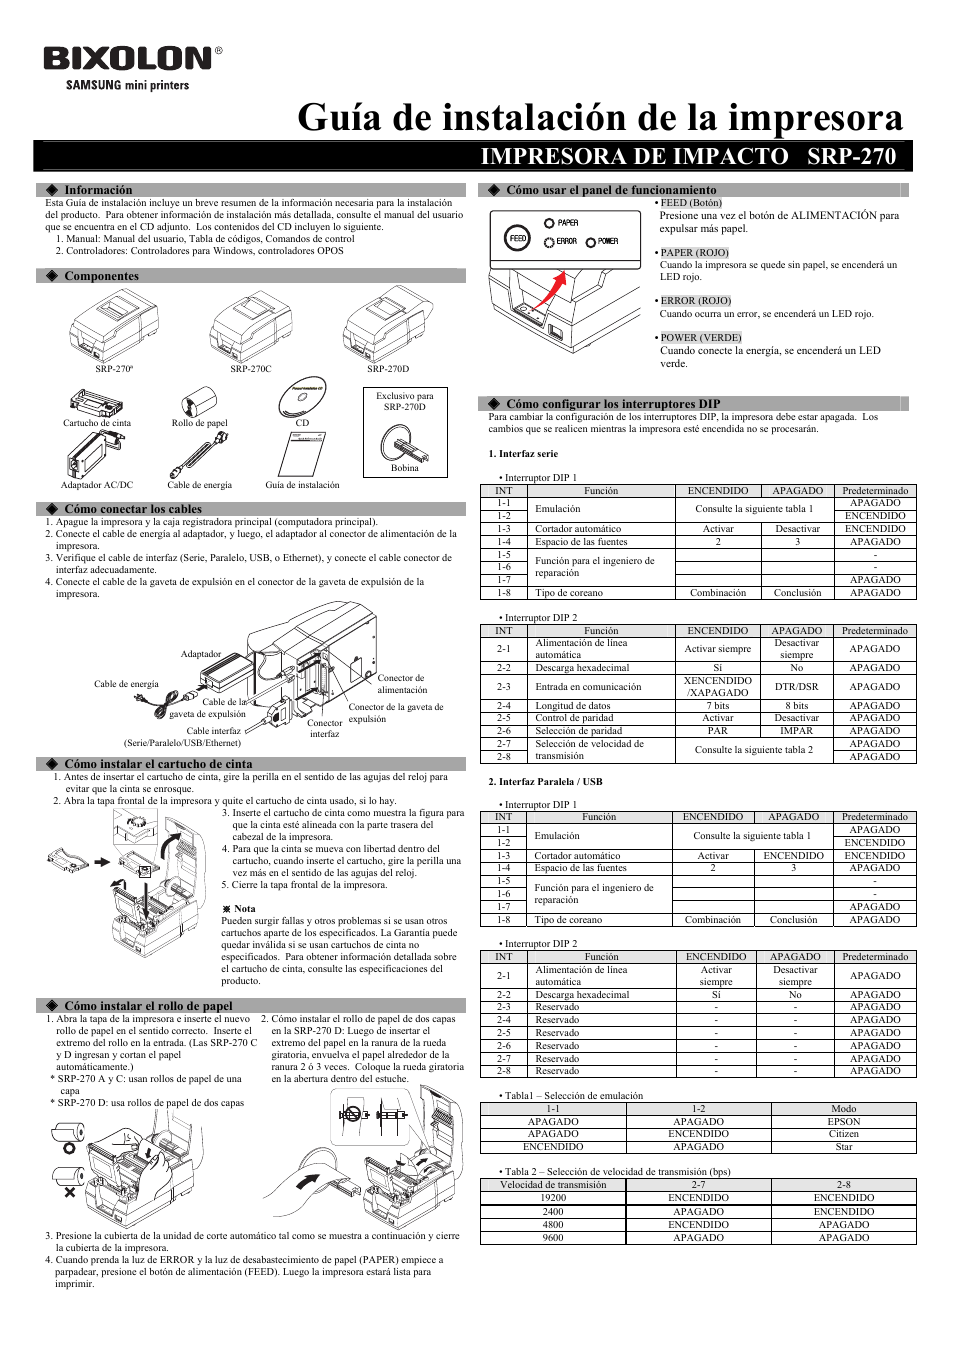 Guía de instalación de la impresora, Impresora de impacto srp-270 | Samsung  BIXOLON SRP-270 User Manual | Page 5 / 8